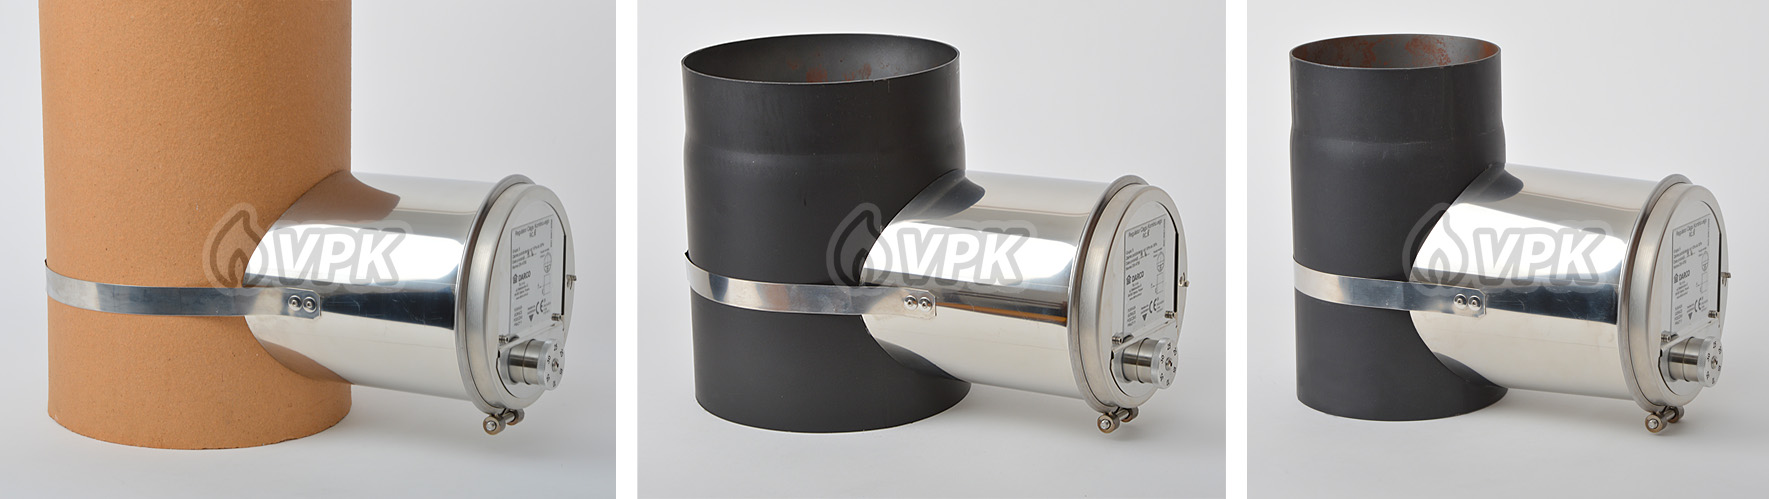 Regulátor na šamotovém průduchu 200 mm (vnější průměr 220 mm) a na trubce kouřovodu 200 mm a 150 mm